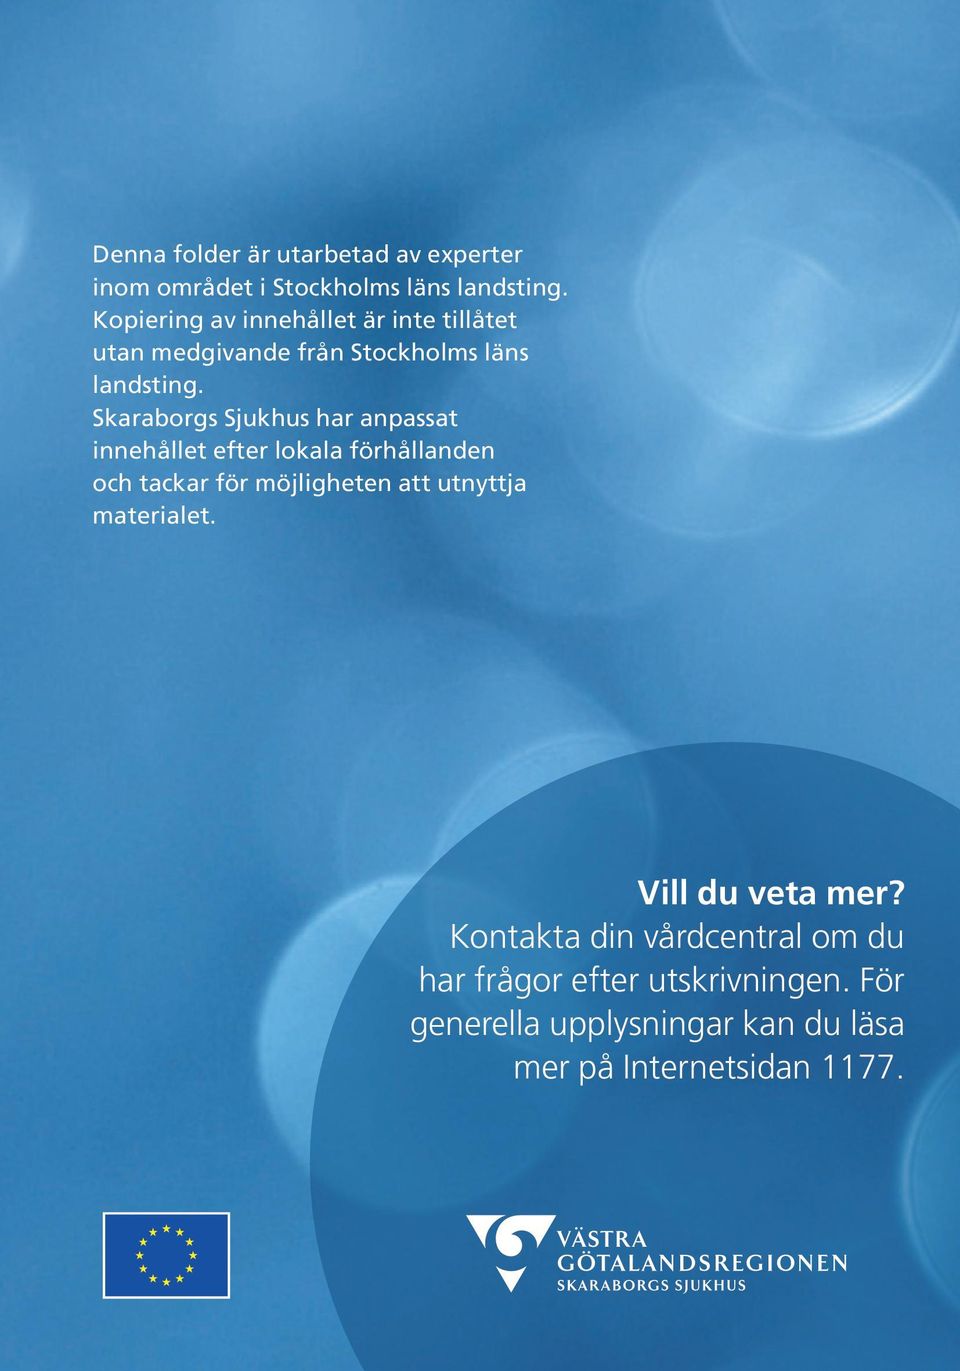 Skaraborgs Sjukhus har anpassat innehållet efter lokala förhållanden och tackar för möjligheten att utnyttja